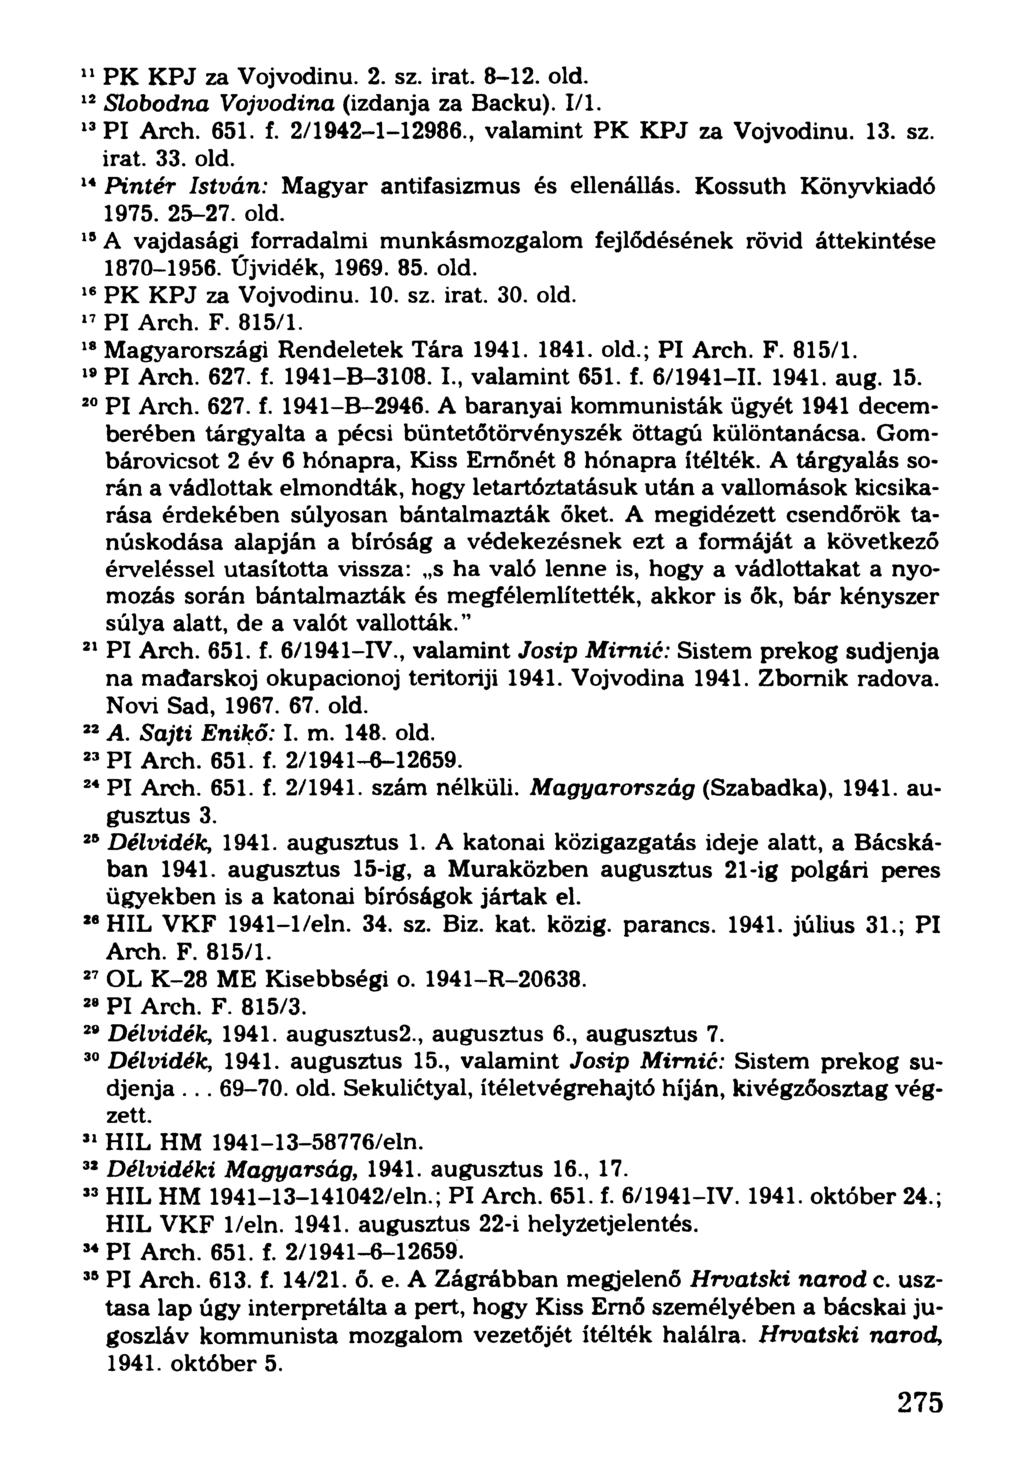 11PK KPJ za Vojvodinu. 2. sz. irat. 8-12. old. 12Slobodna Vojvodina (izdanja za Backu). 1/1. 13Pl Arch. 651. f. 2/1942-1-12986., valamint PK KPJ za Vojvodinu. 13. sz. irat. 33. old. 14Pintér István: Magyar antifasizmus és ellenállás.